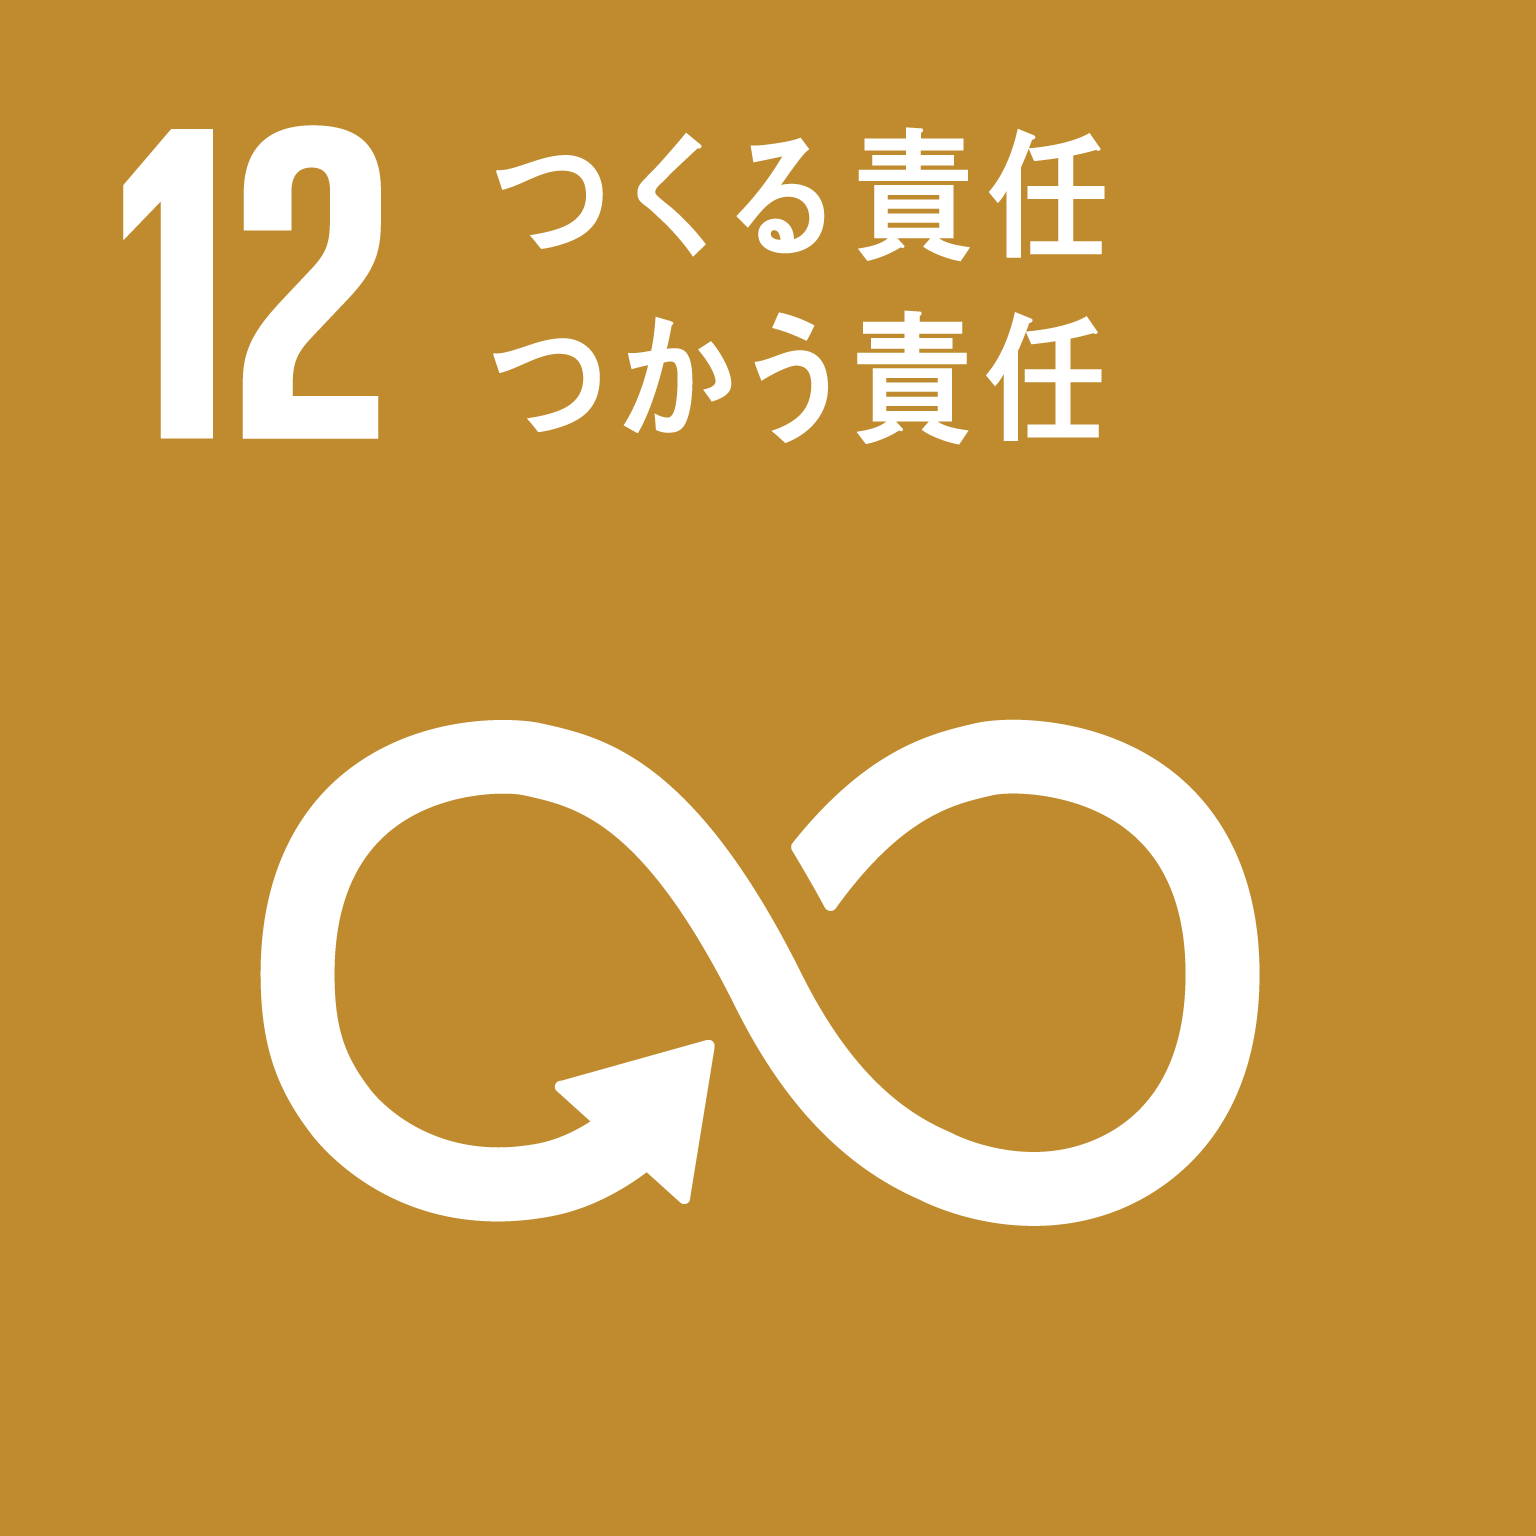 「12.つくる責任、つかう責任」の文字と目標12のロゴ